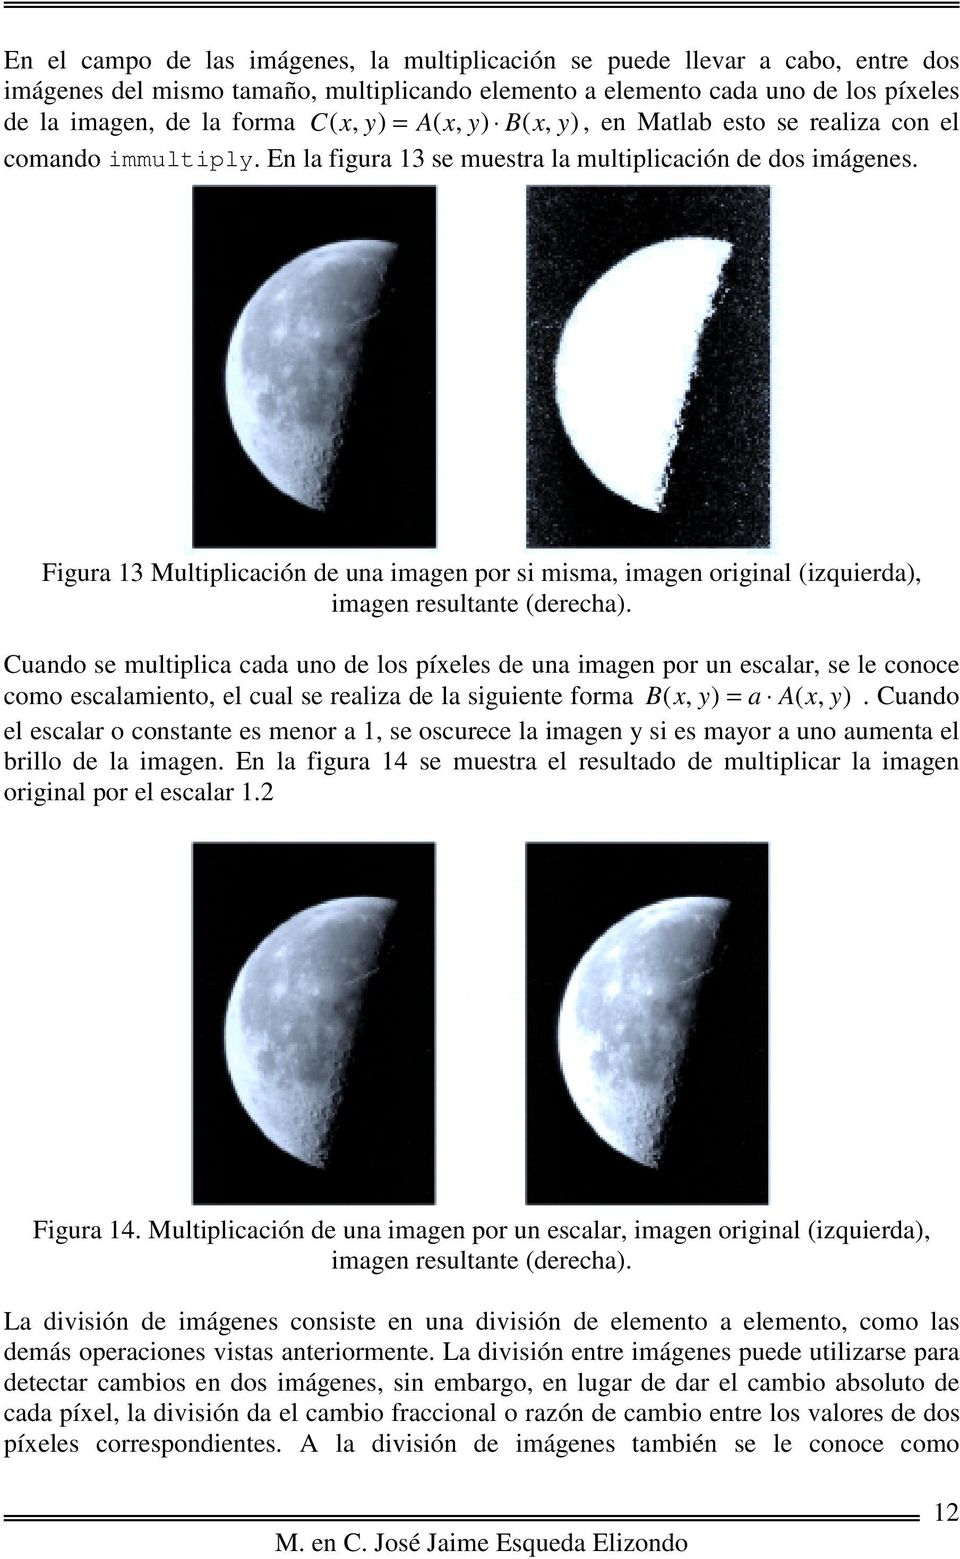 Figura 3 Multiplicación de una imagen por si misma, imagen original (izquierda), imagen resultante (derecha).